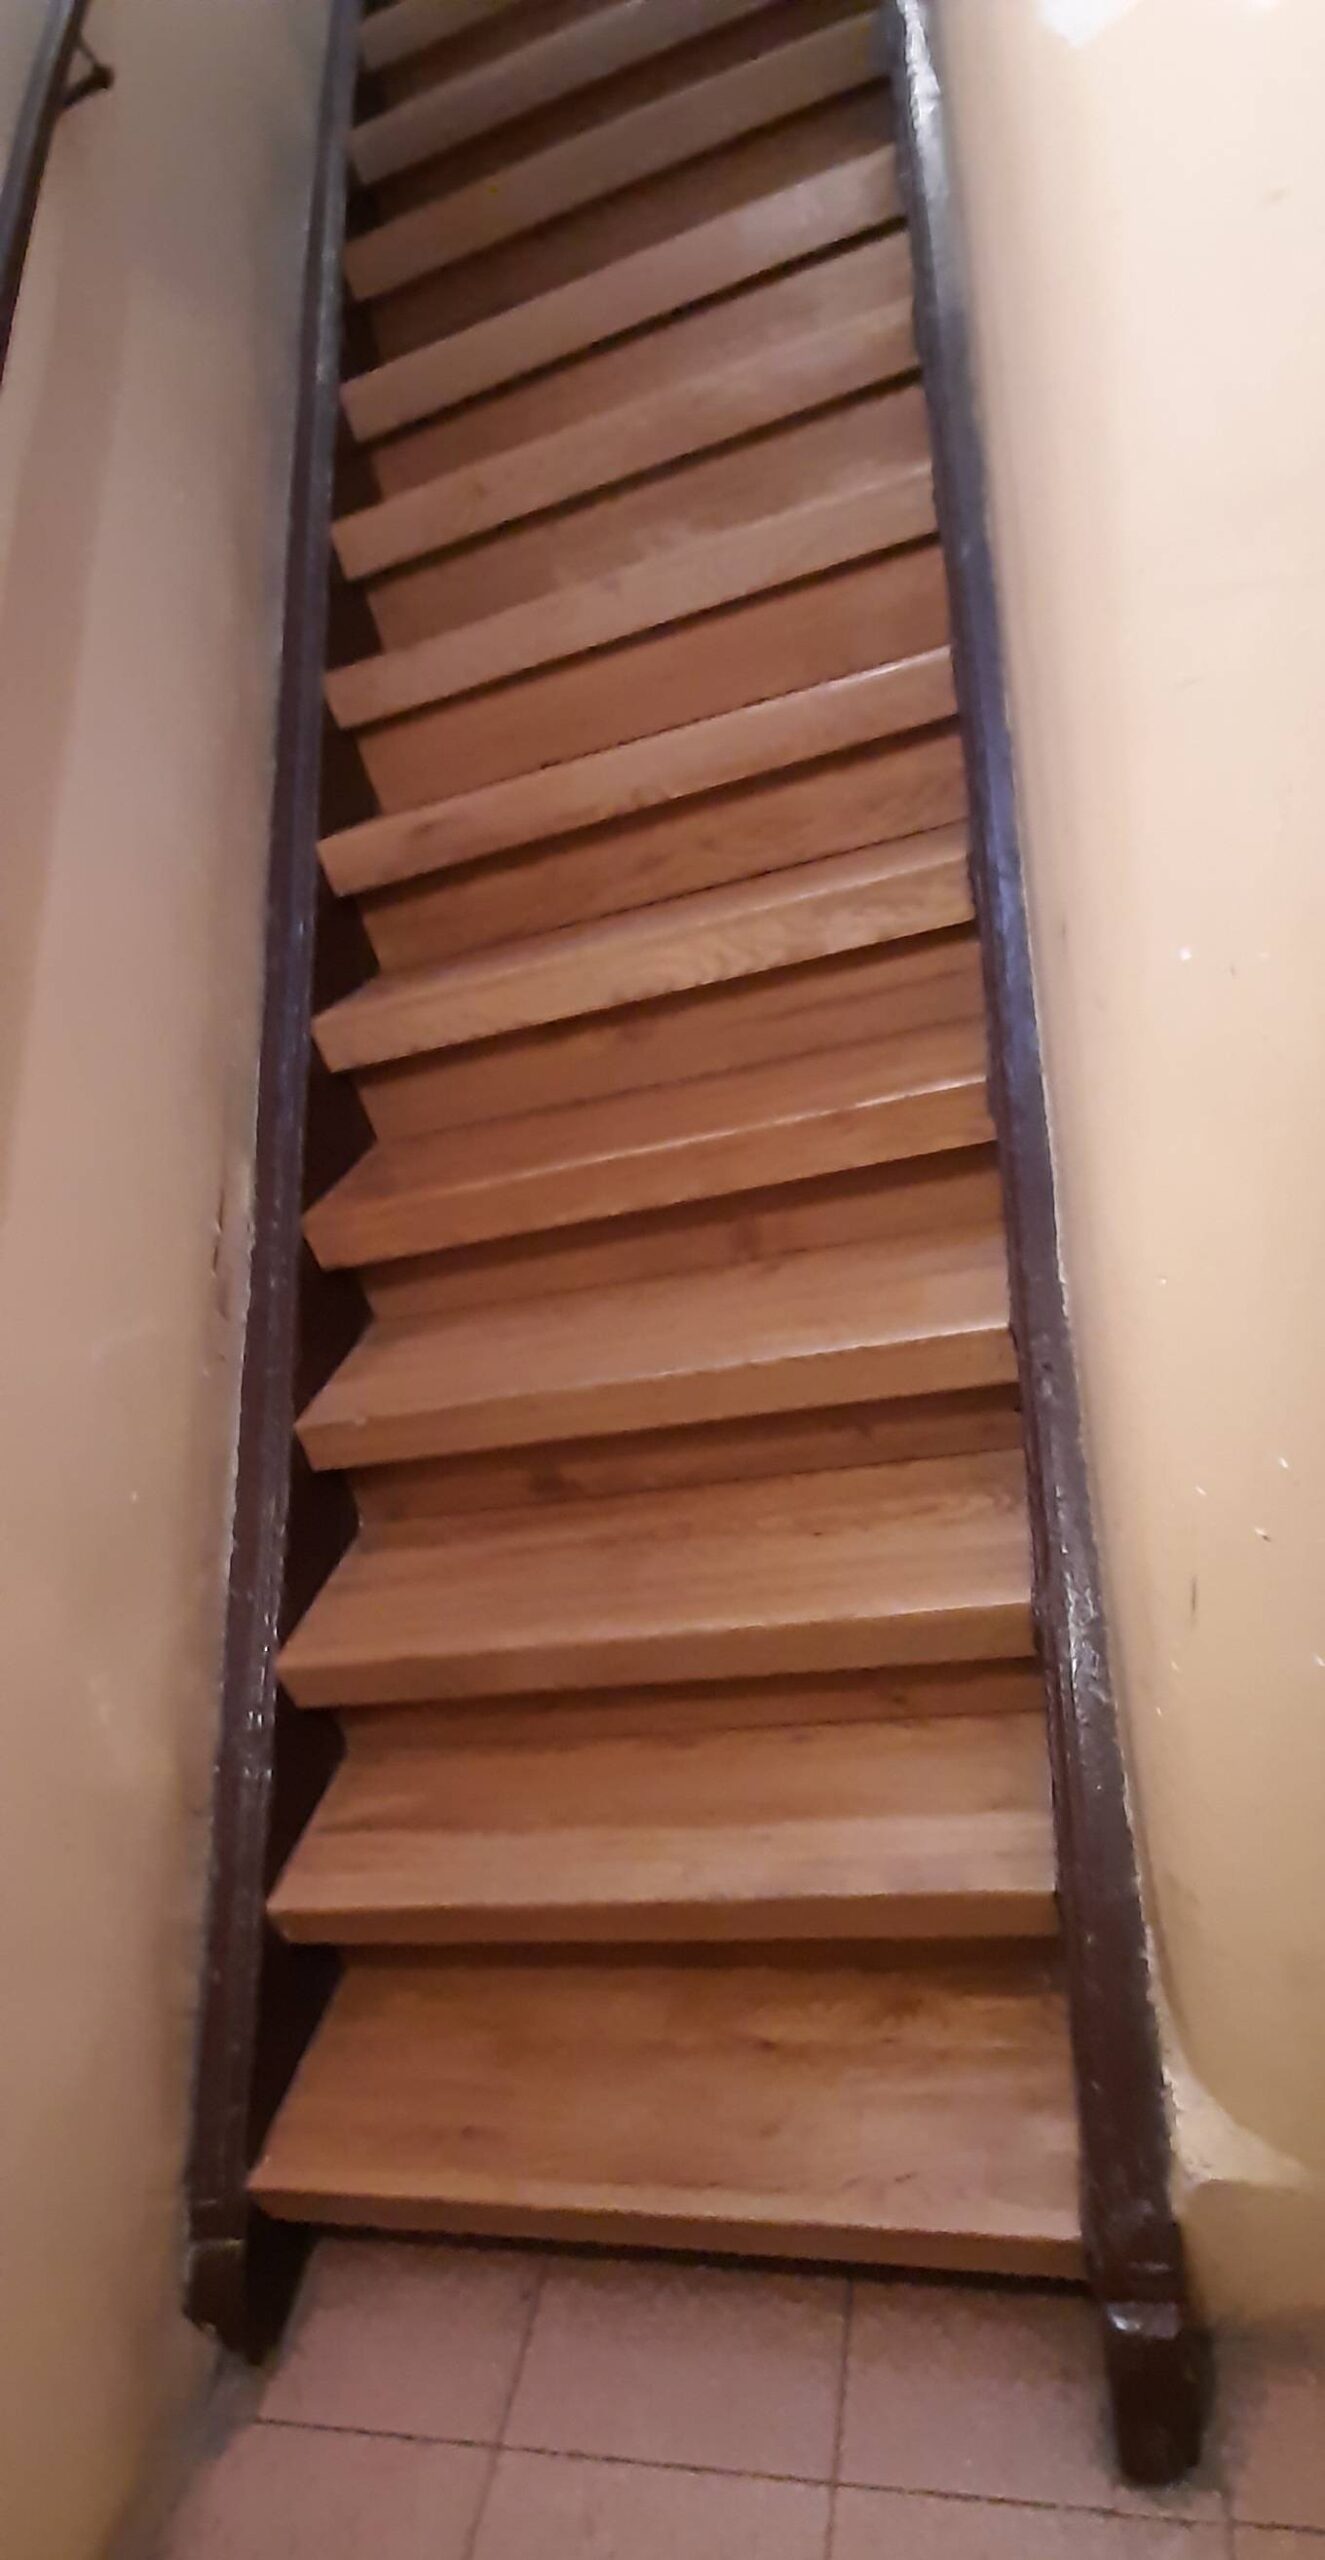 Klatka schodowa. Drewniane schody na II piętro z nowymi stopniami. Fot. Agnieszka Dziubiel 2022 r., źródło: AOD III.